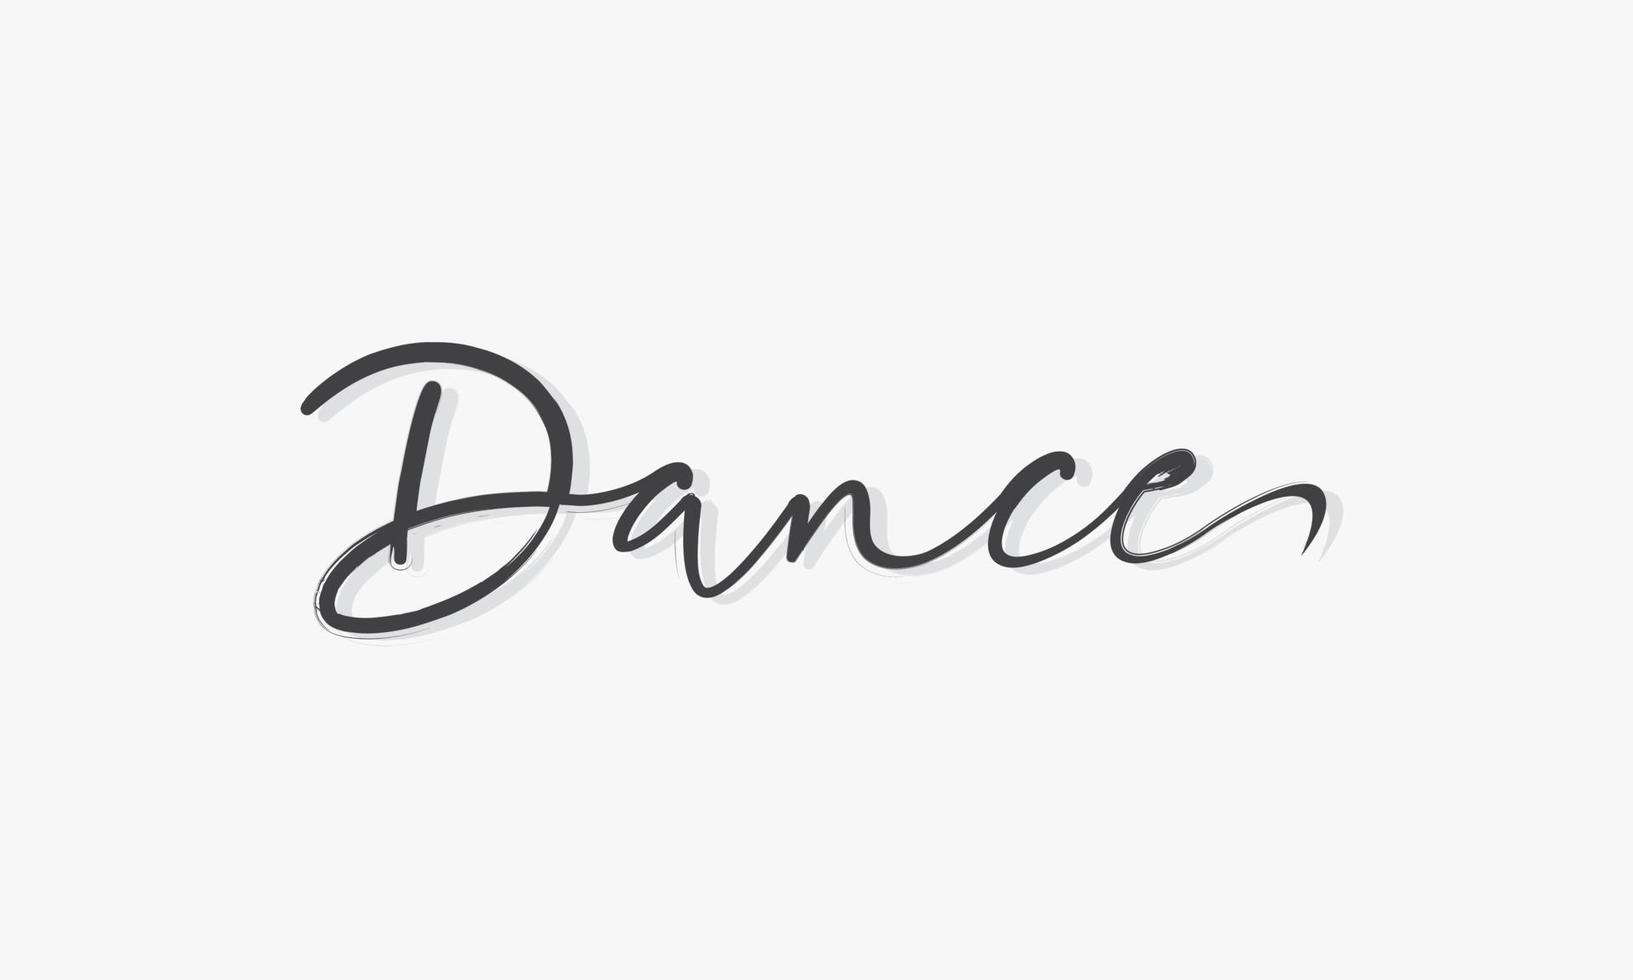 palabra de baile escrita a mano con vector de diseño de sombra.